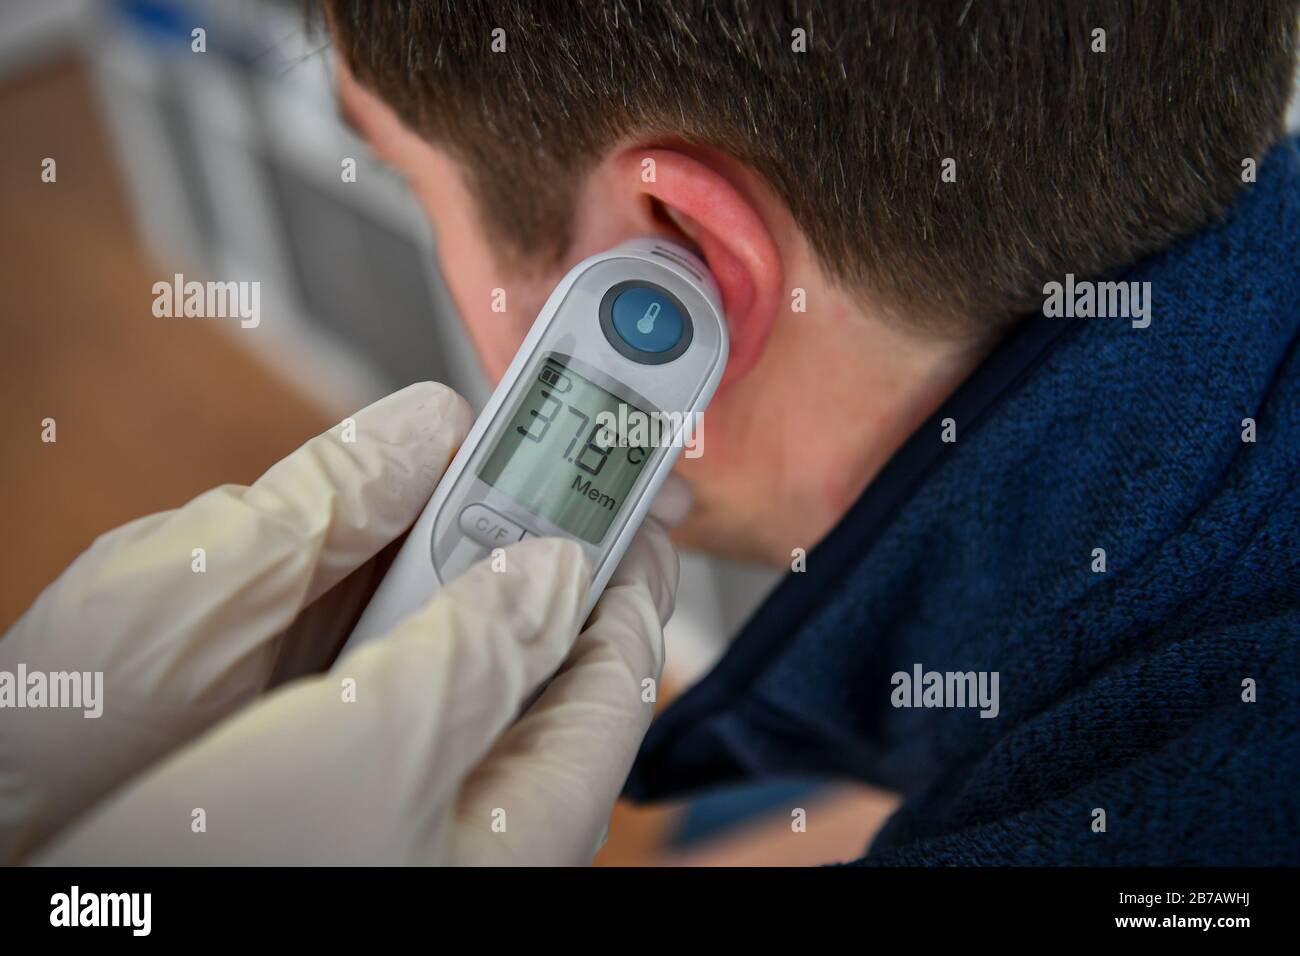 Image POSÉE PAR MODELA température corporelle de 37,8 degrés Celsius est  enregistrée sur un homme à l'aide d'un thermomètre tympanique. Photo PA.  Date De L'Image: Samedi 14 Mars 2020. Crédit photo devrait